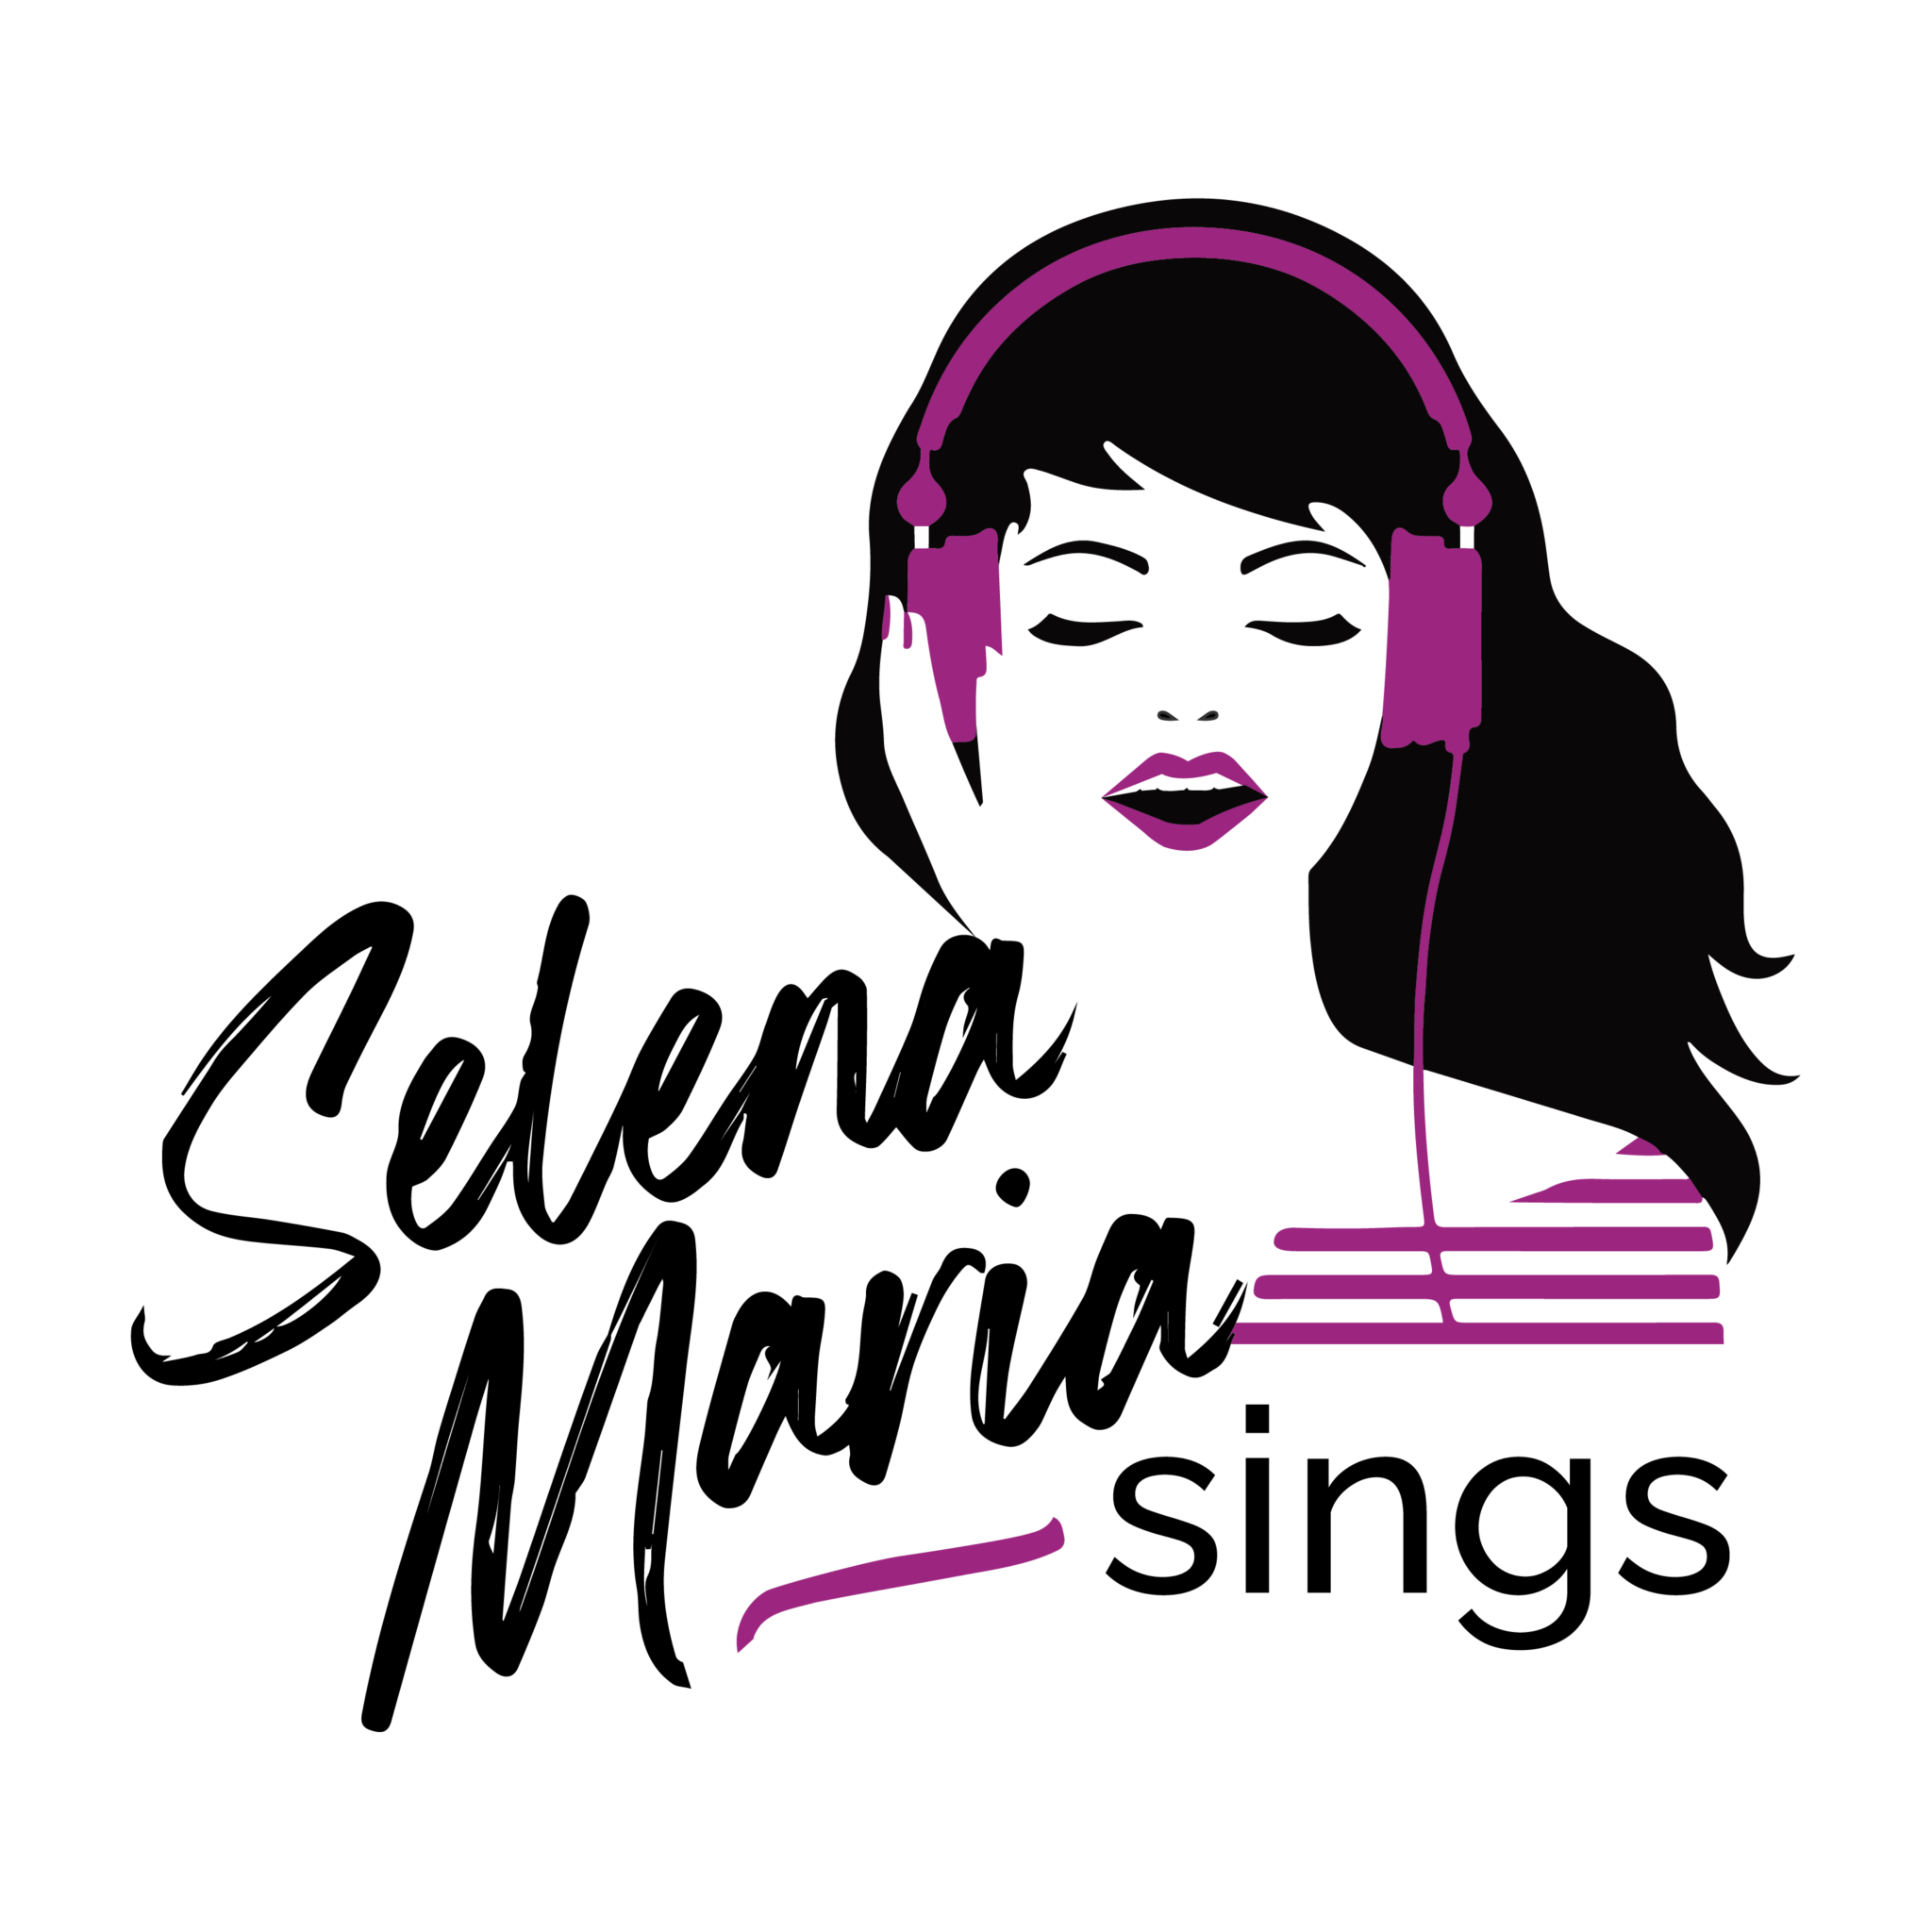 Selena Maria Sings Poster Image